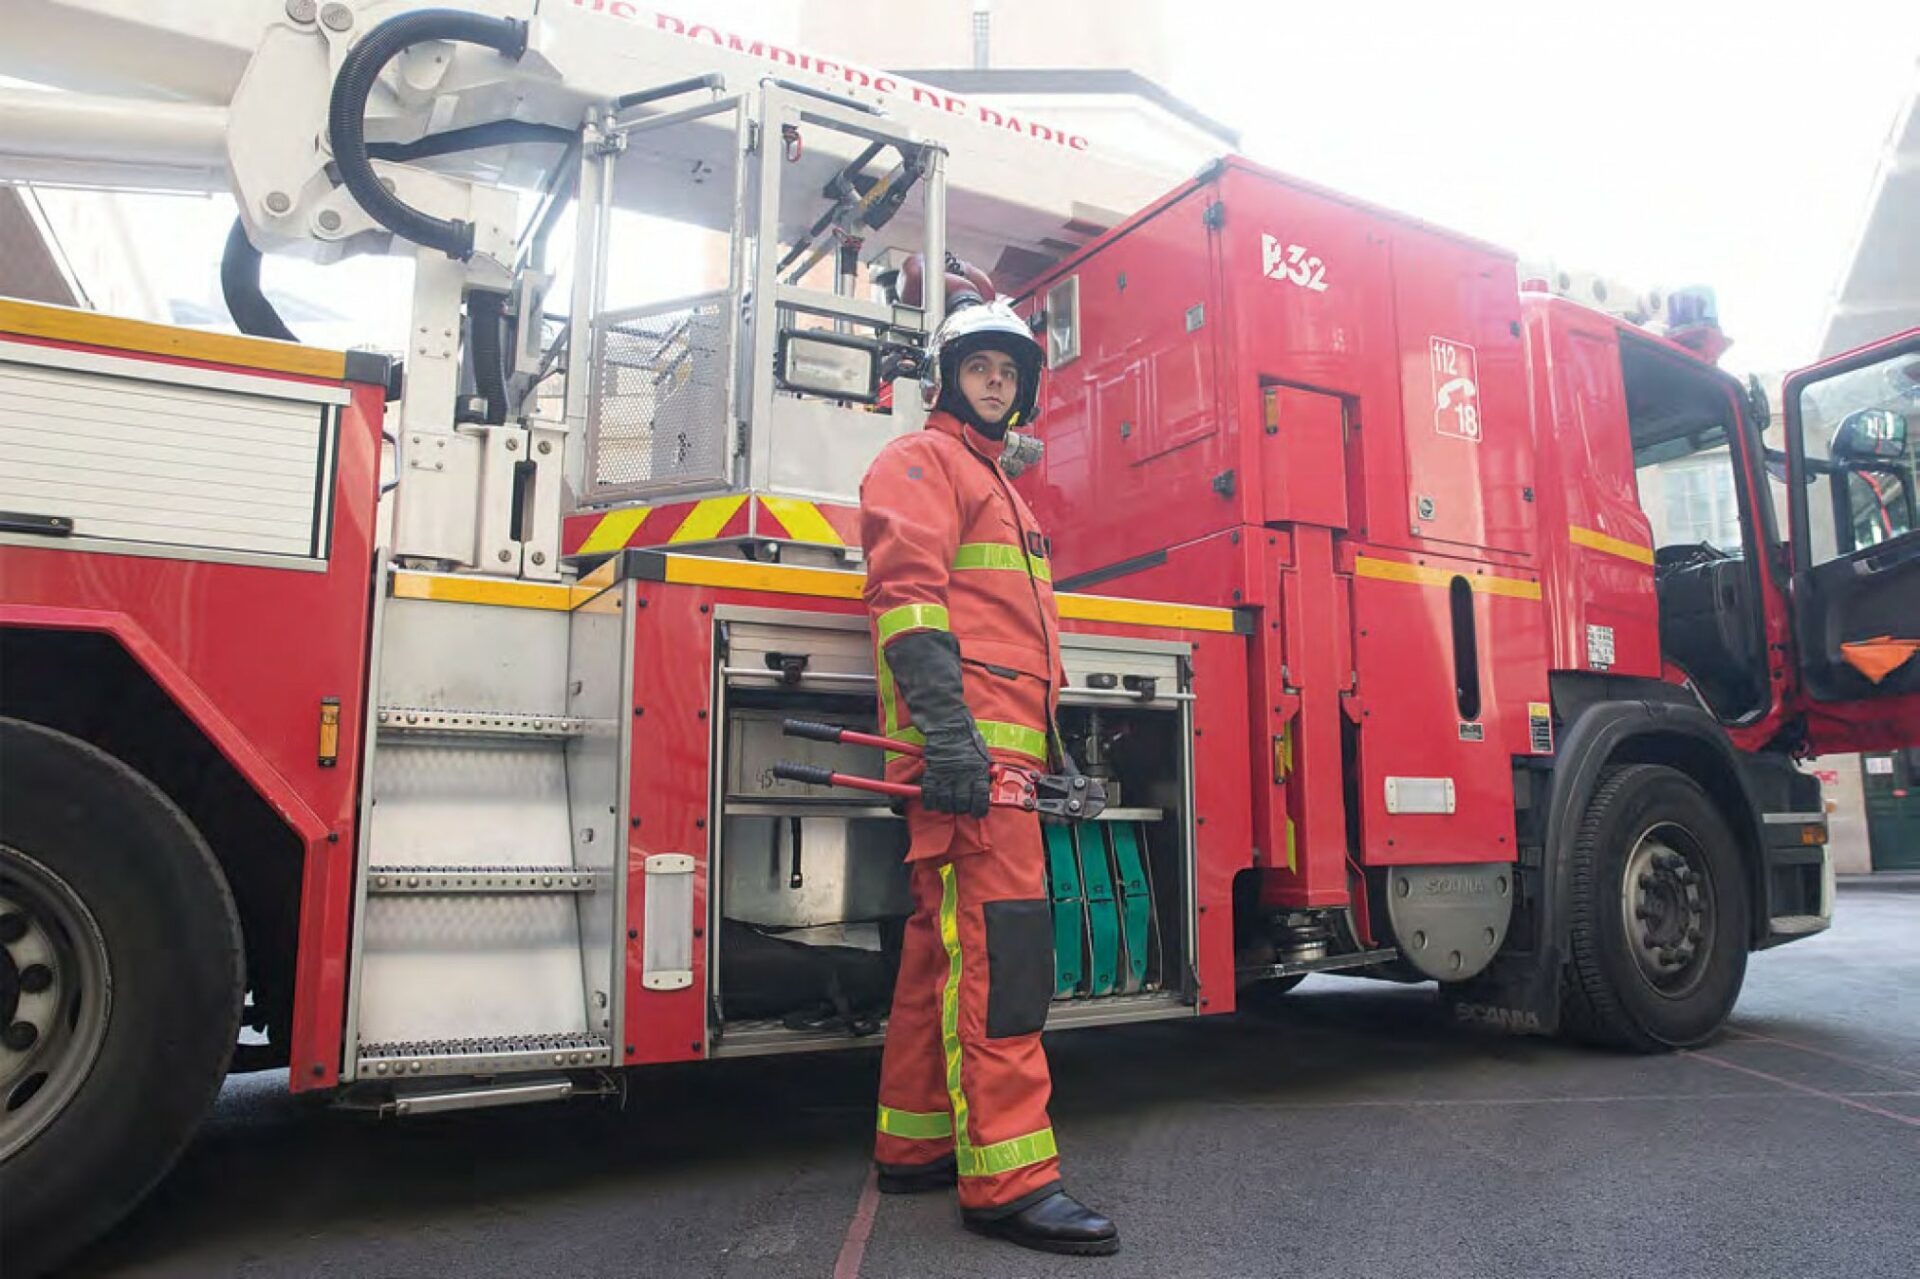 équipement pompier urgence Feu porter secours uniforme sécurité